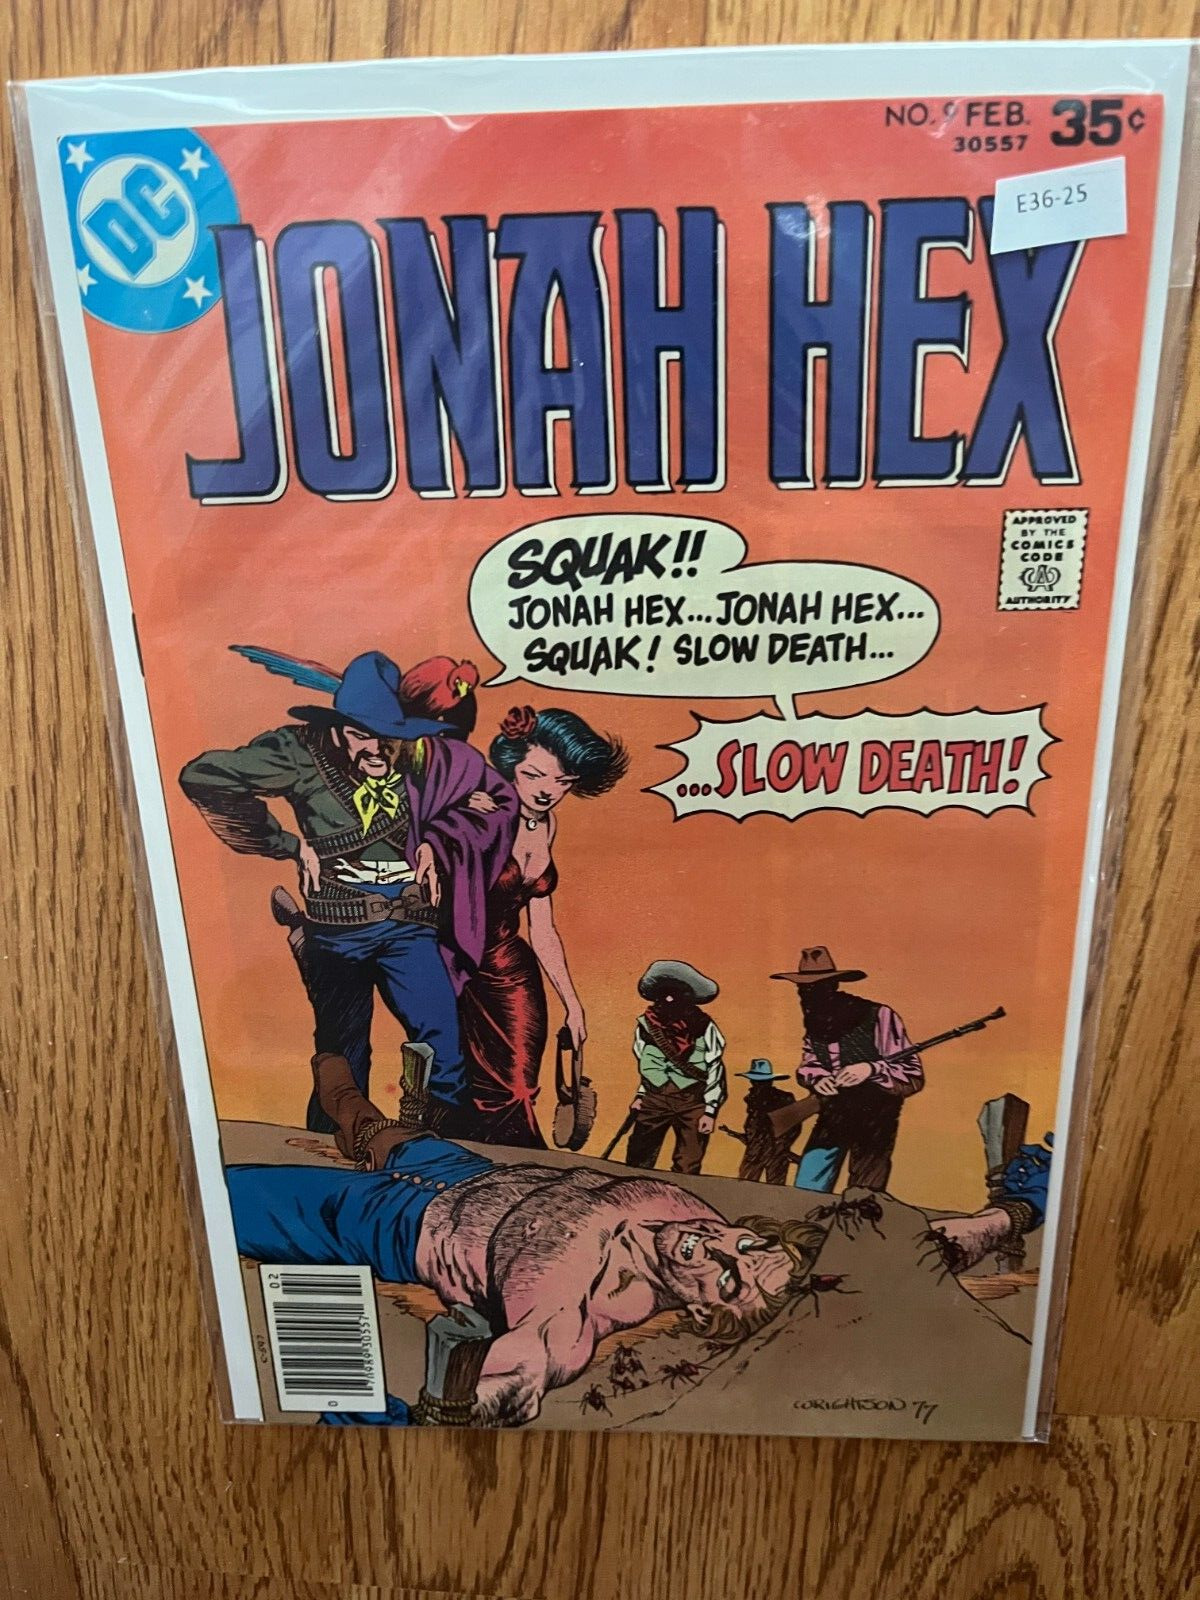 Jonah Hex 9 DC Comics 9.4 Newsstand E36-25